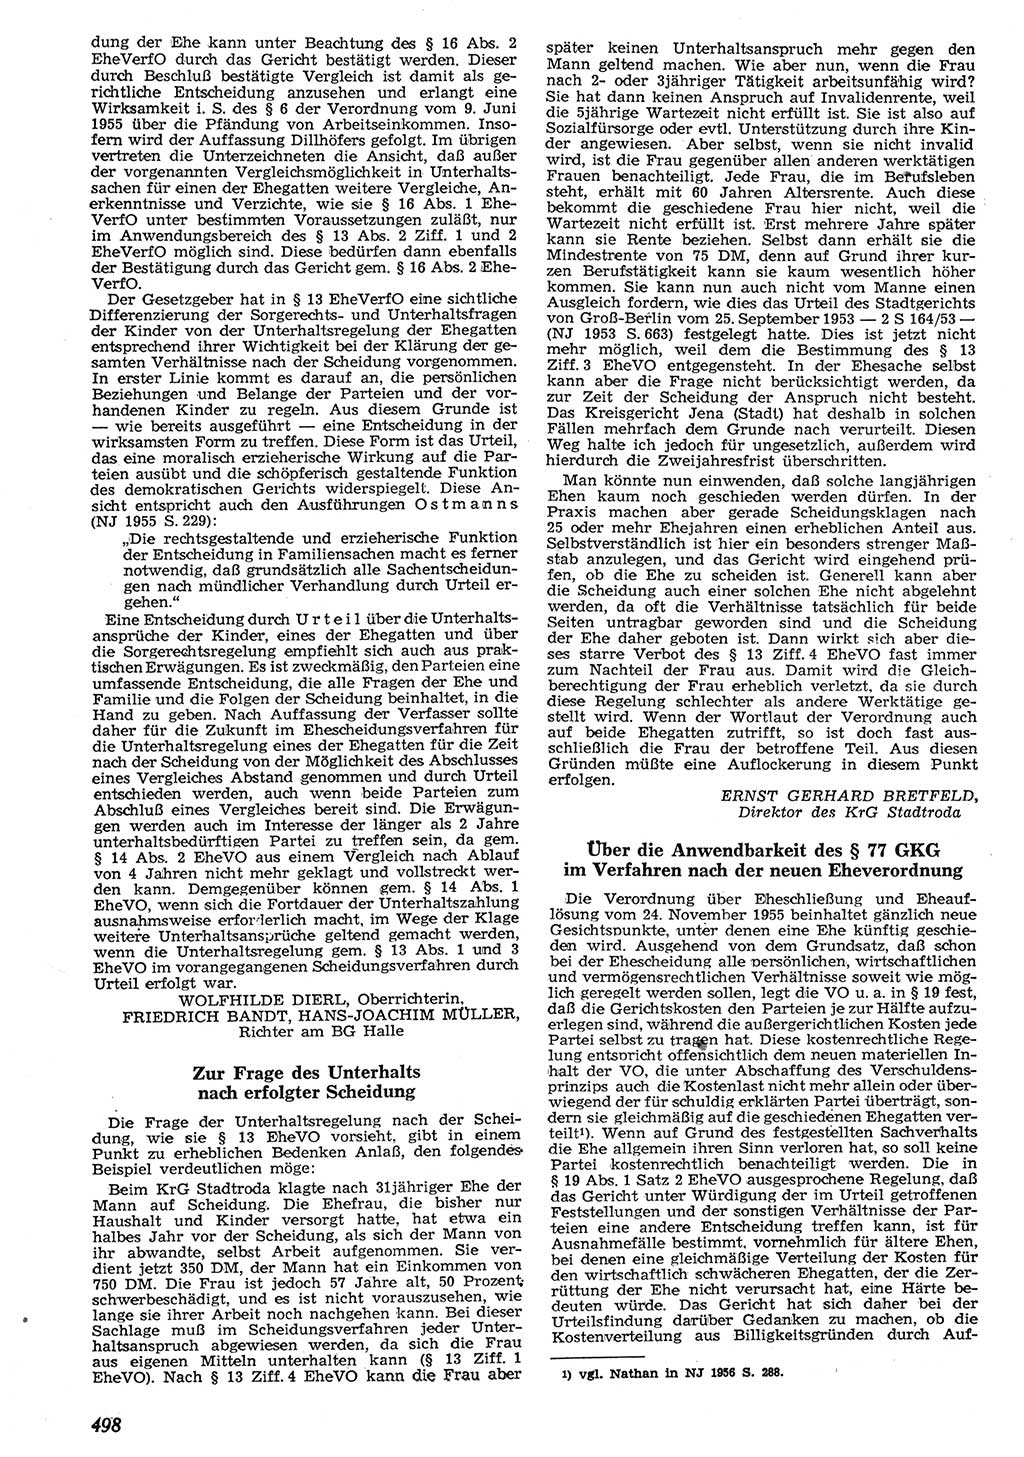 Neue Justiz (NJ), Zeitschrift für Recht und Rechtswissenschaft [Deutsche Demokratische Republik (DDR)], 10. Jahrgang 1956, Seite 498 (NJ DDR 1956, S. 498)